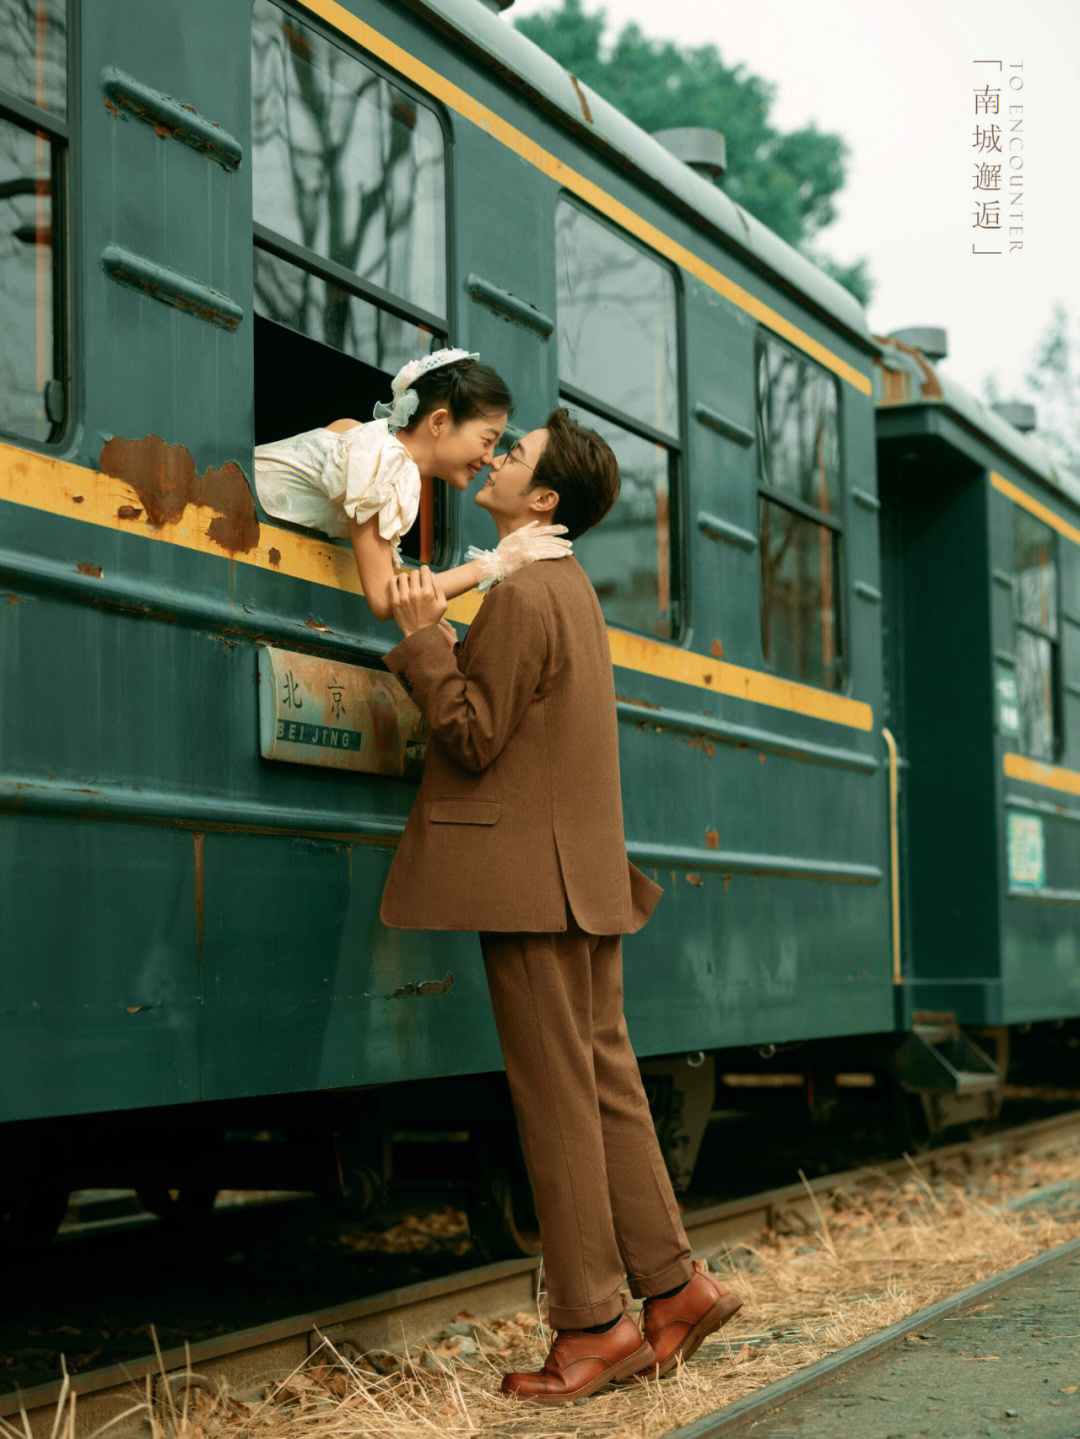 绿皮火车婚纱照拍出了电影的感觉